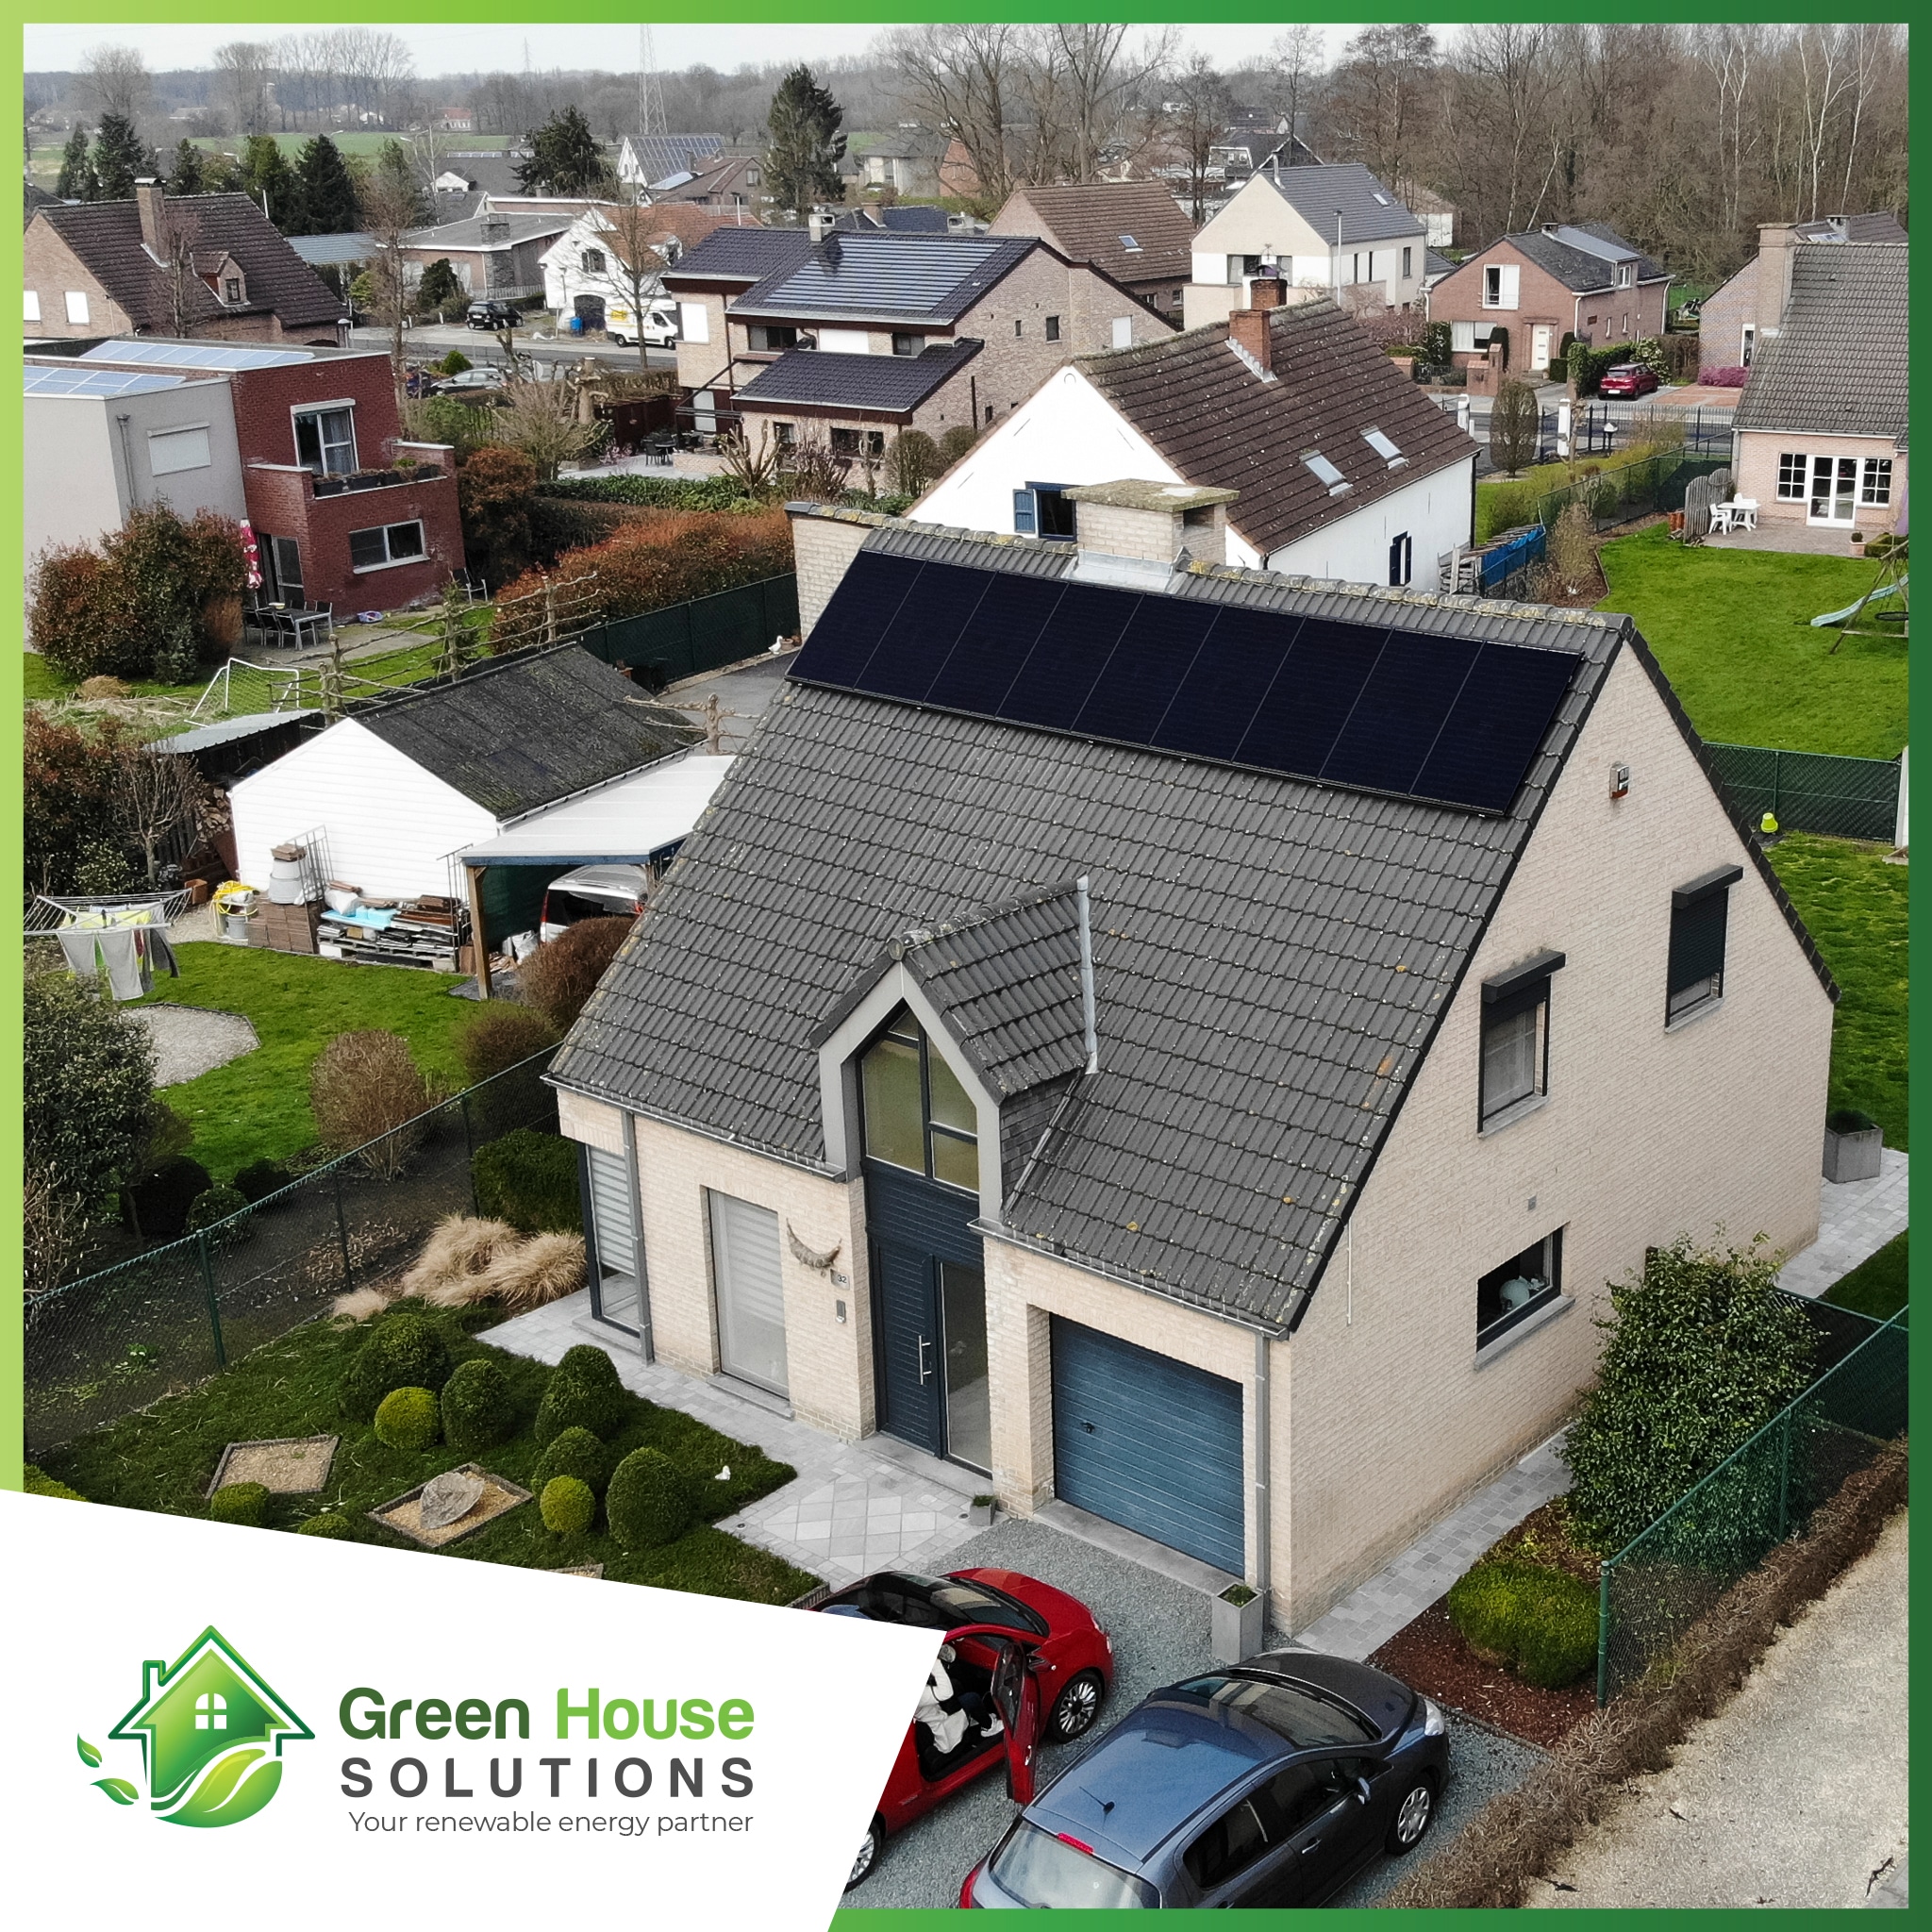 Green House Solutions zonnepanelen plaatsen installeren of kopen 00035